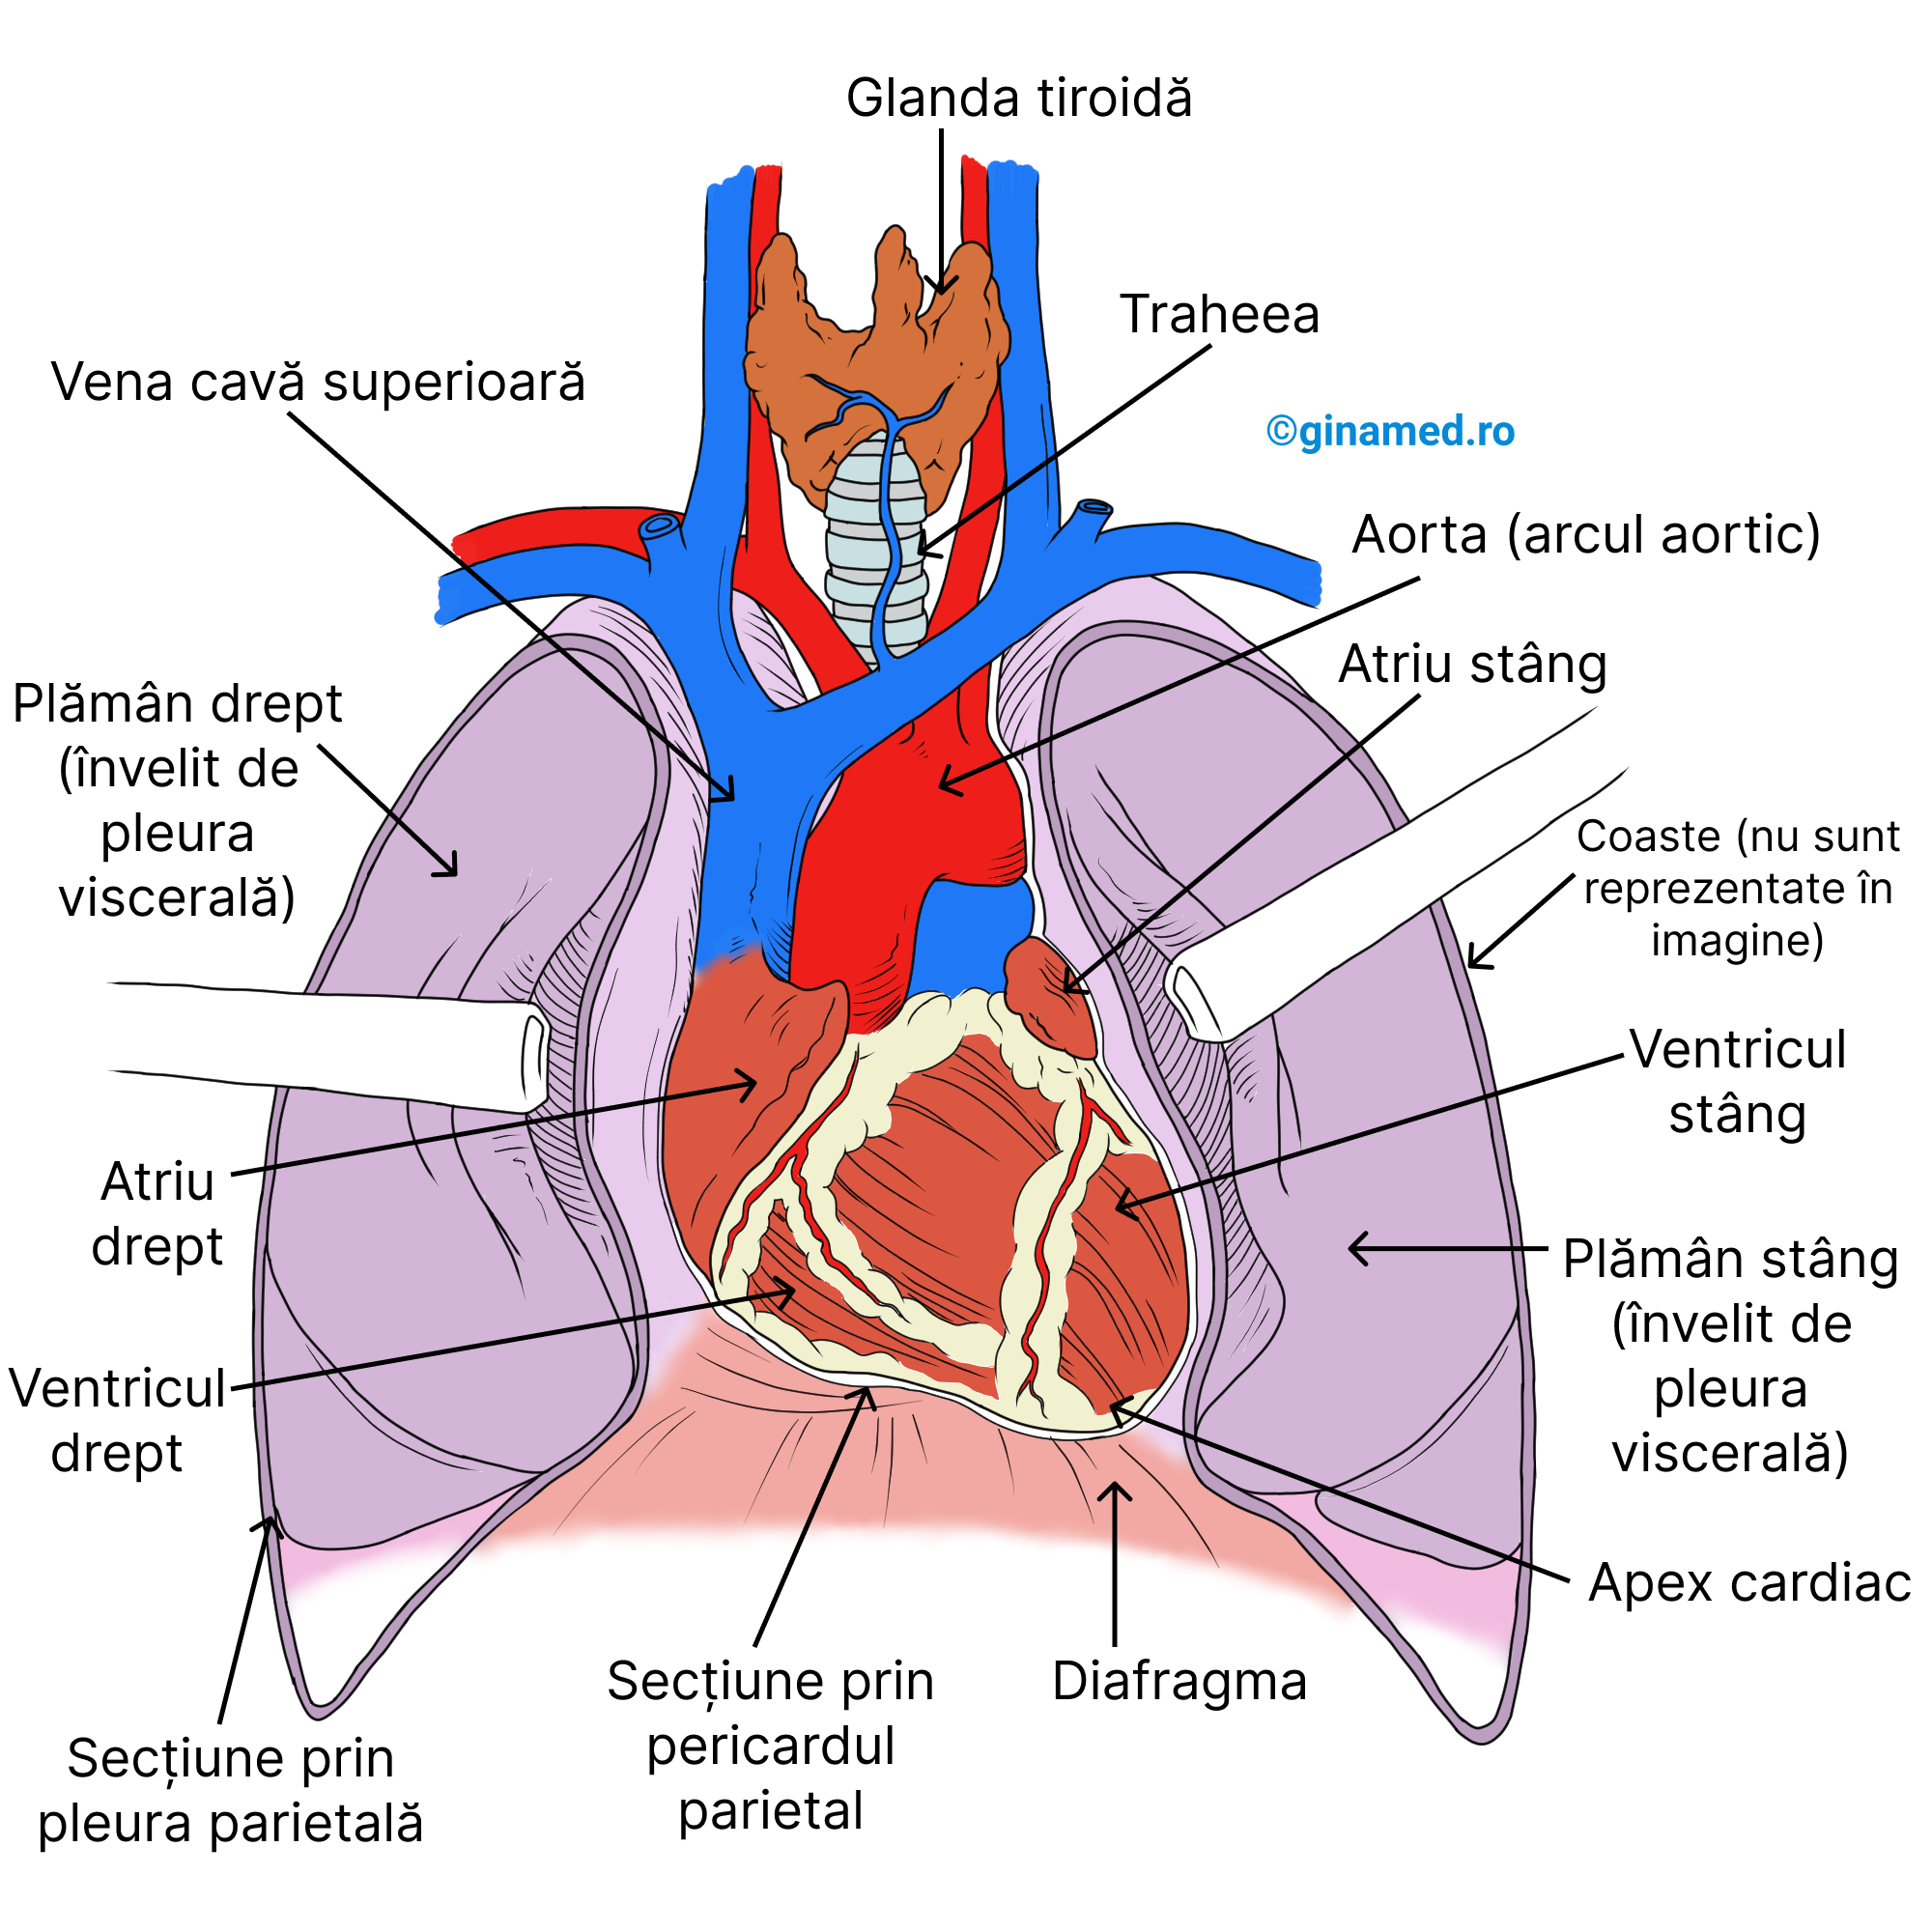 Localizarea inimii în cavitatea toracică privită din poziție ventrală (anterioară).